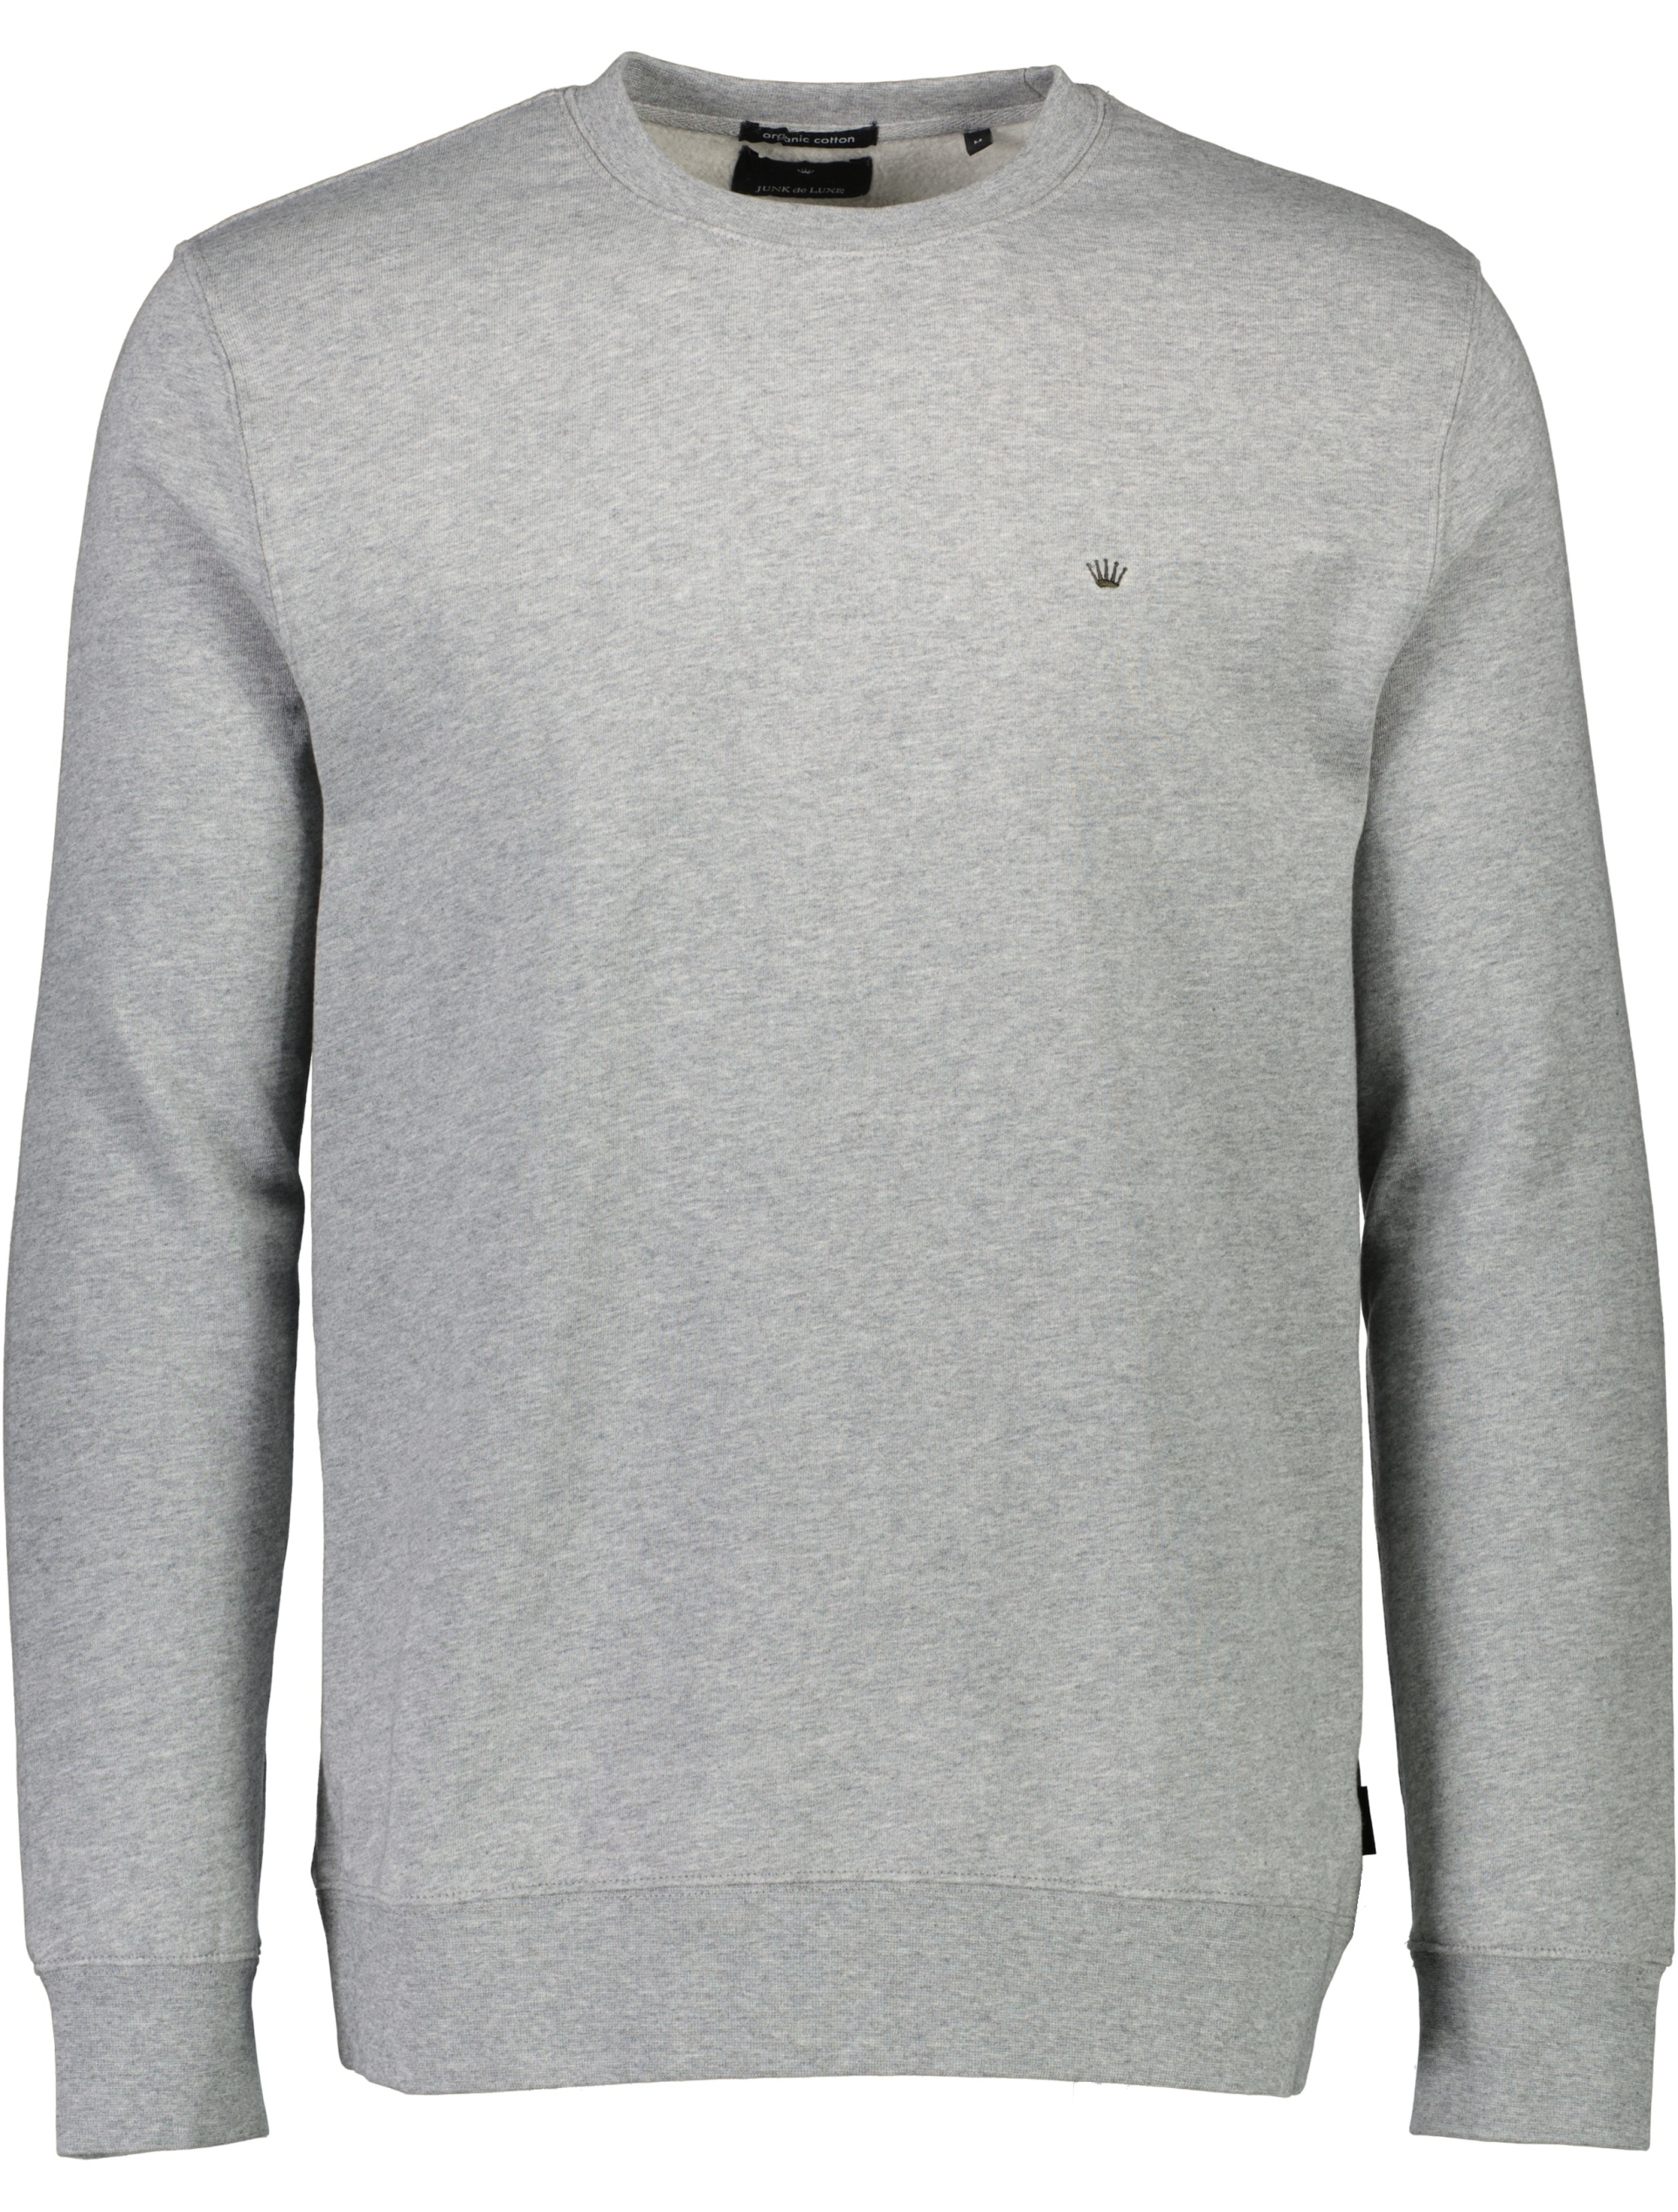 Junk de Luxe Sweatshirt grå / grey mel